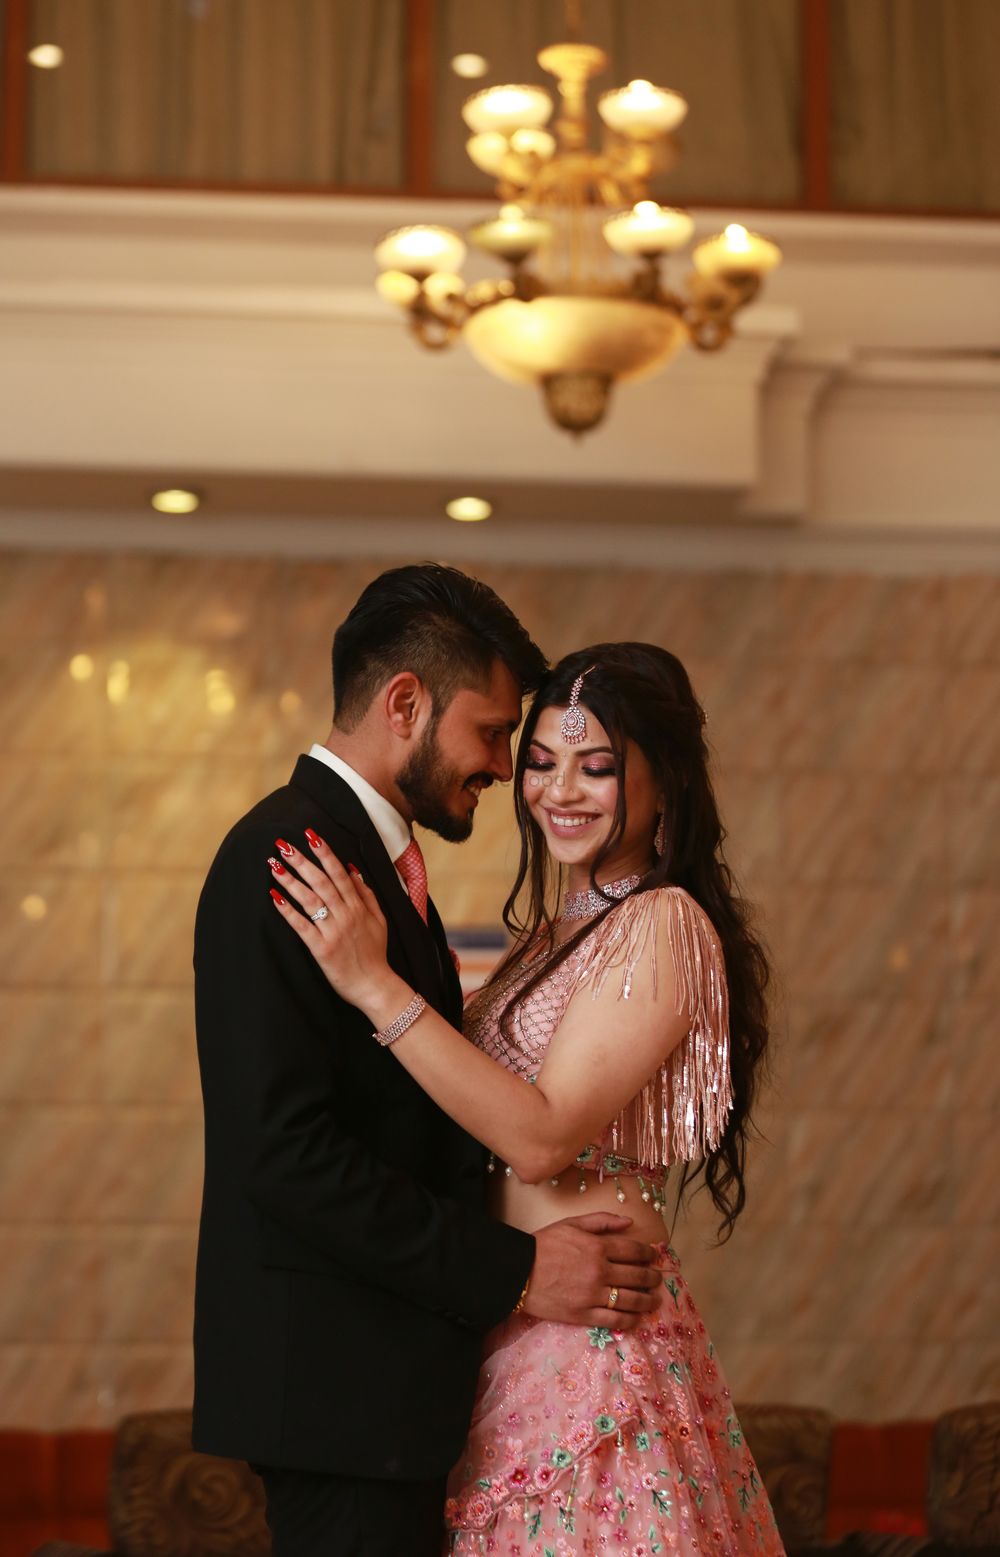 Photo From Hemang & Varsha - By Wedding Editorial